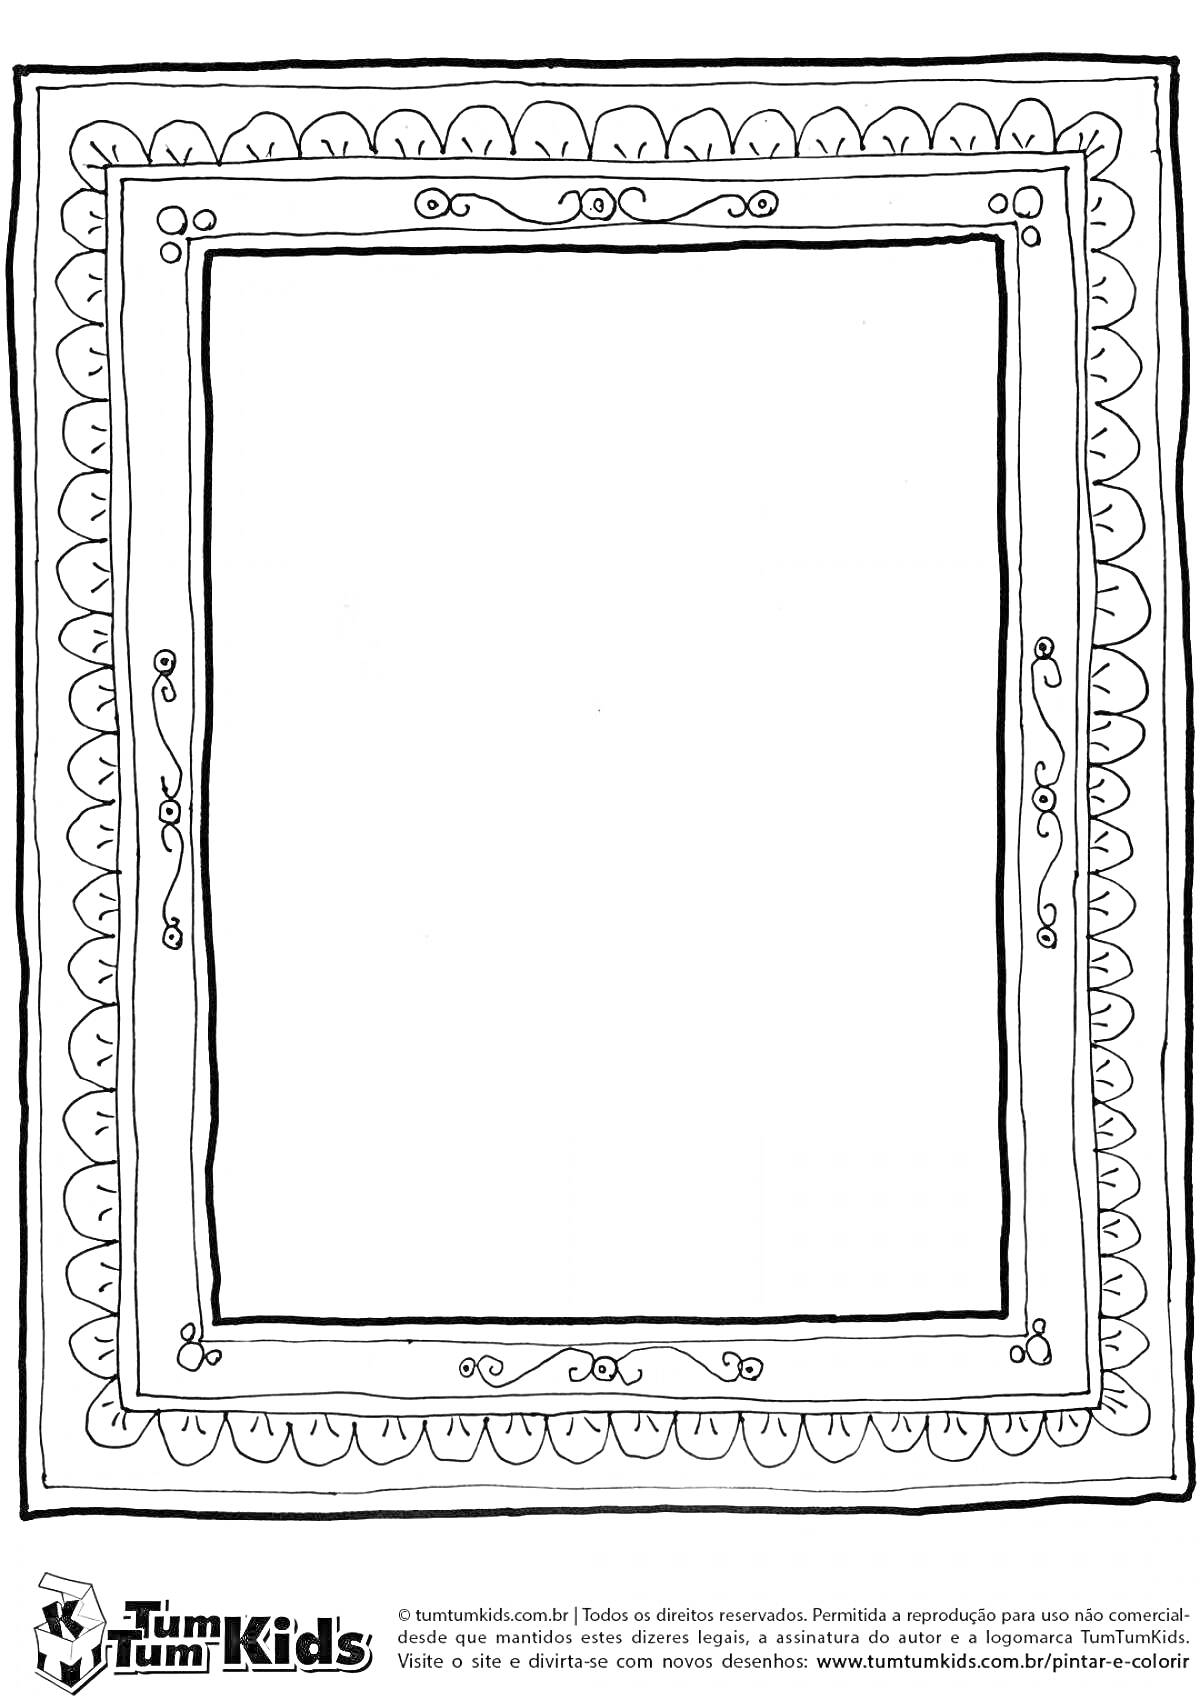 Раскраска Портретная рамка с узорами и завитками, обводка из сердечек и волнистого орнамента